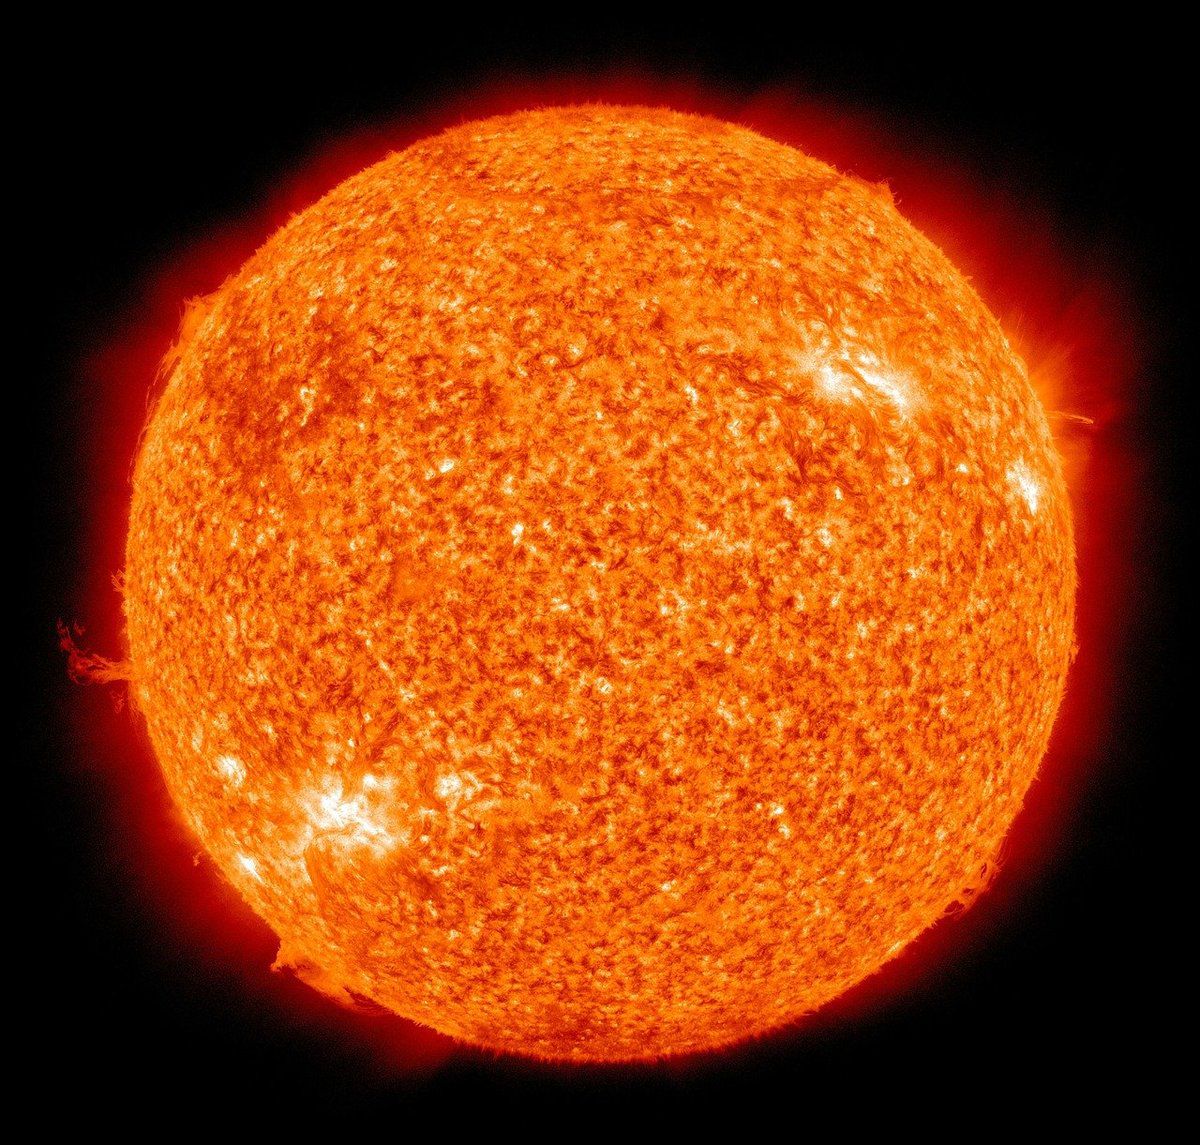 Найпотужнішу за три роки спалах на Сонці зафіксували астрономи. У п'ятницю, 29 травня, орбітальна обсерваторія SDO зафіксувала найпотужніший за останні три роки спалах на Сонці.